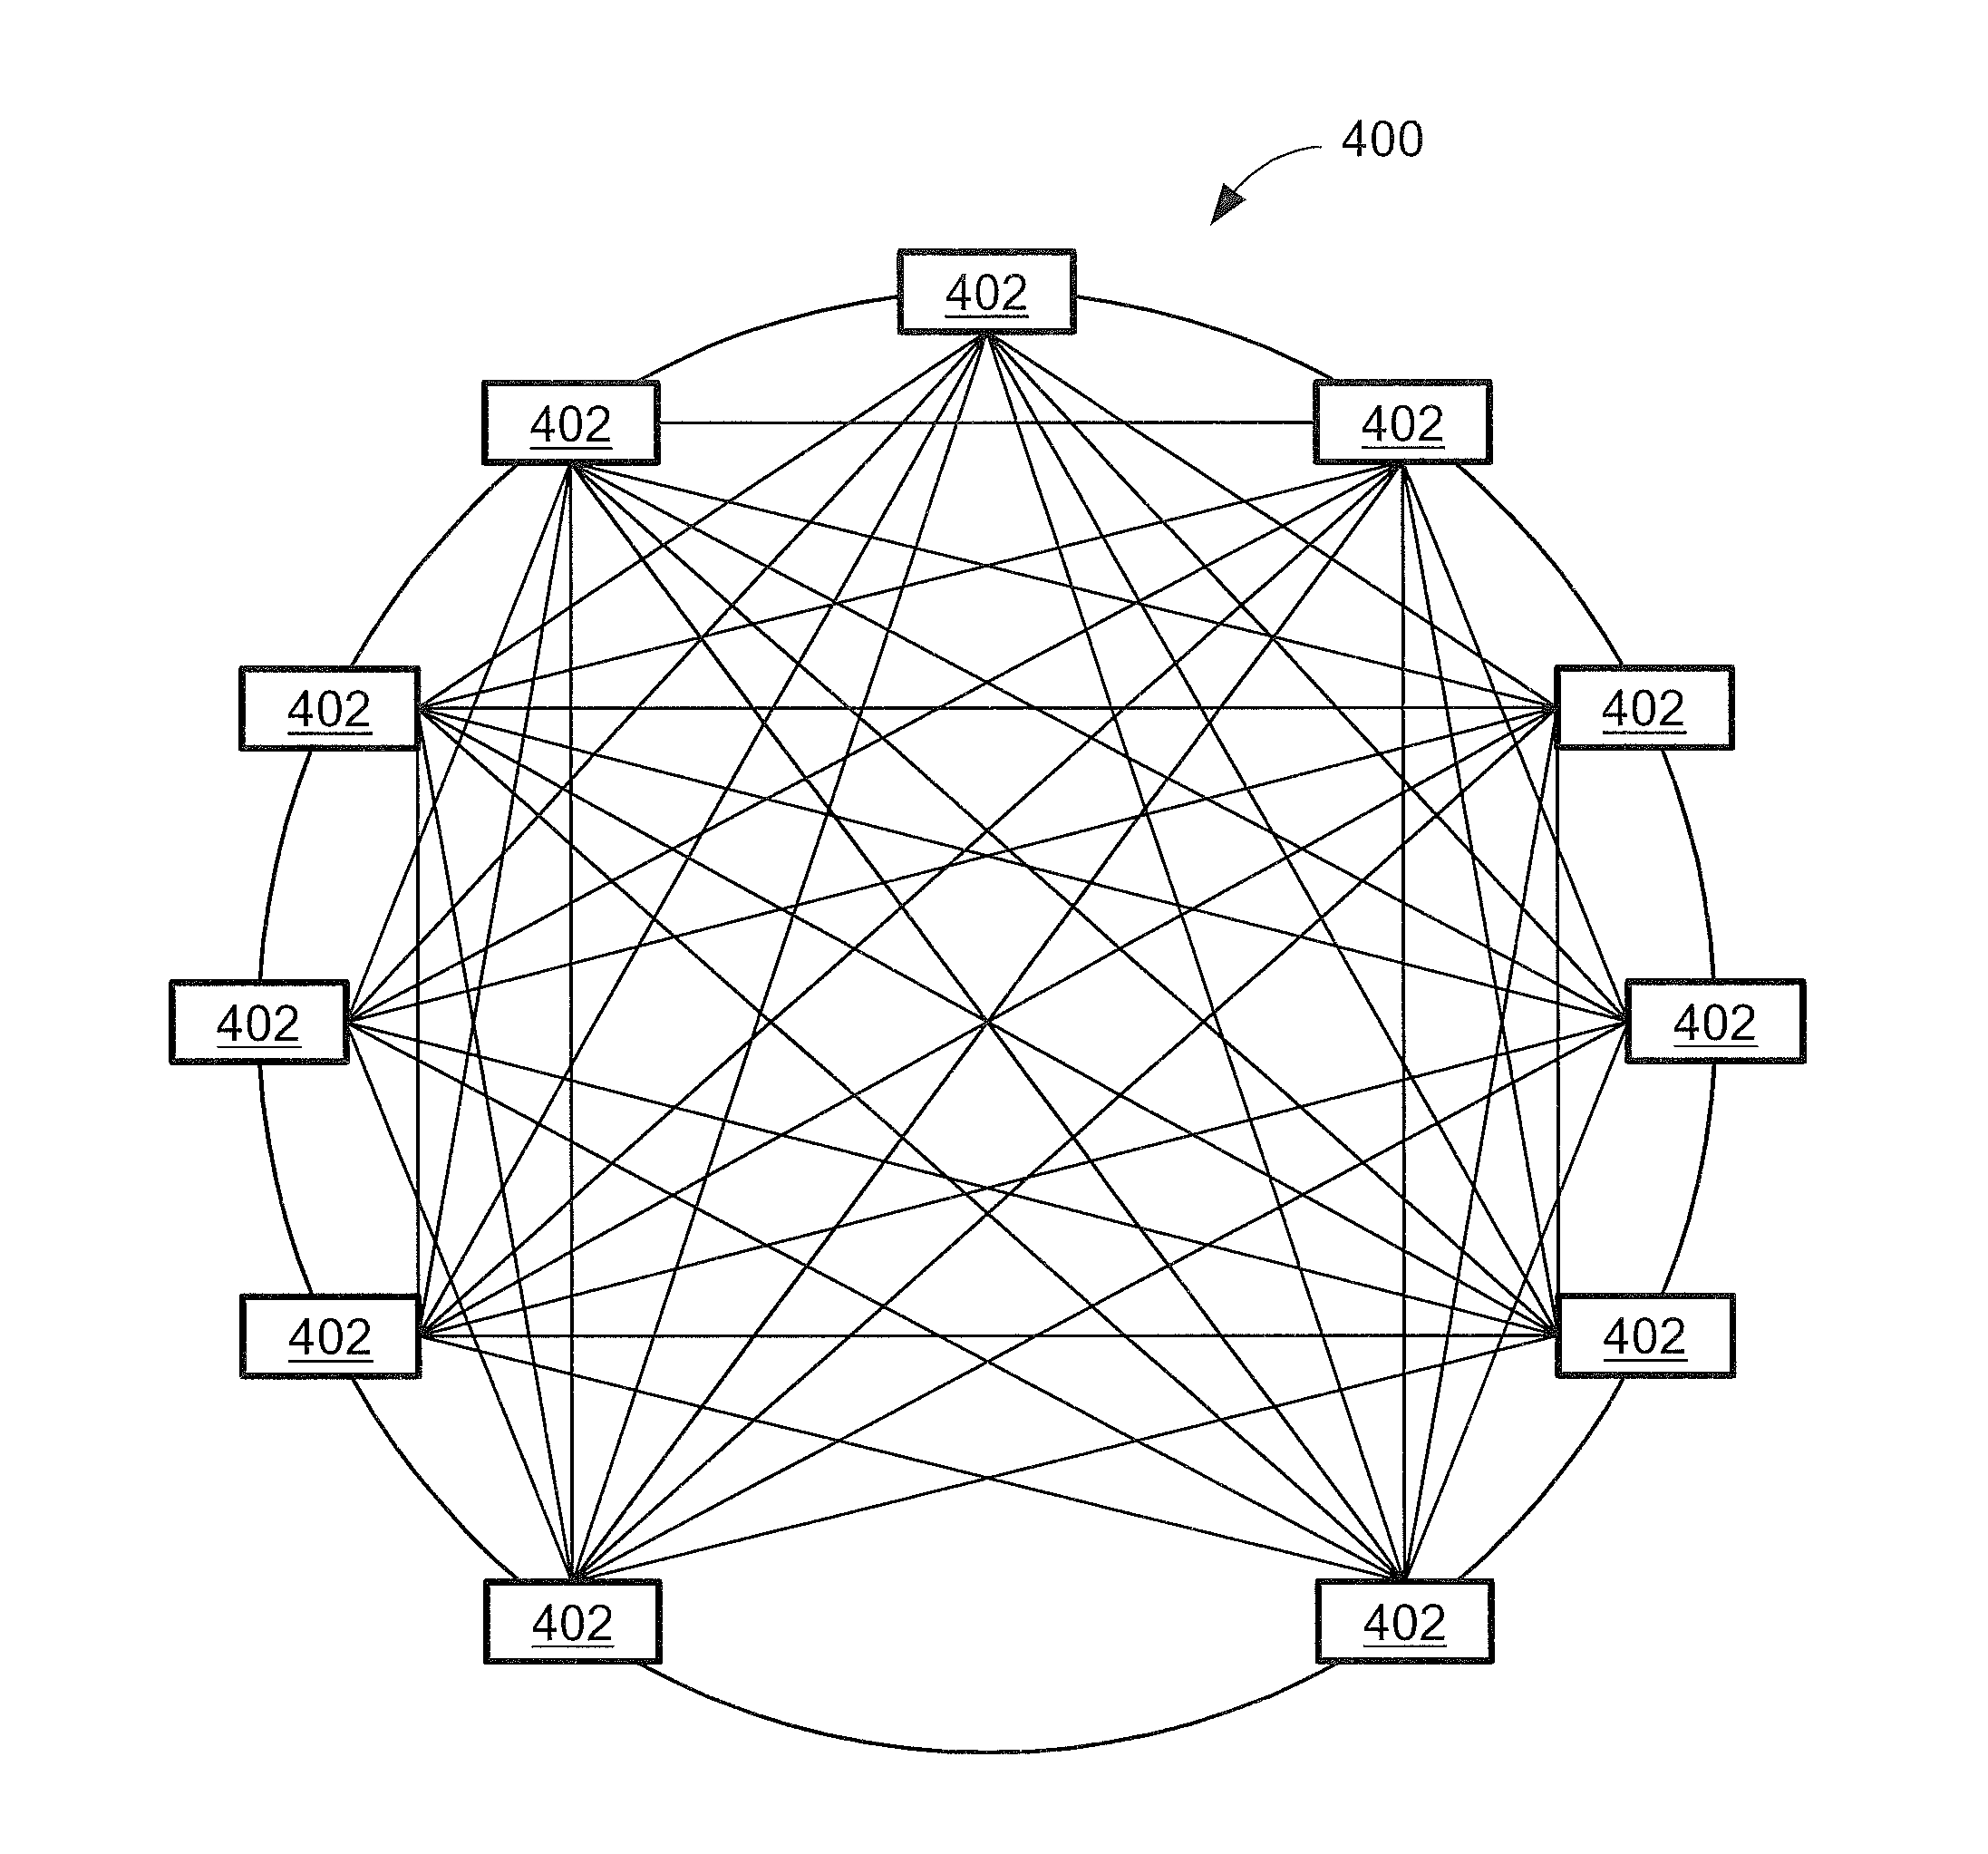 Network node connection configuration